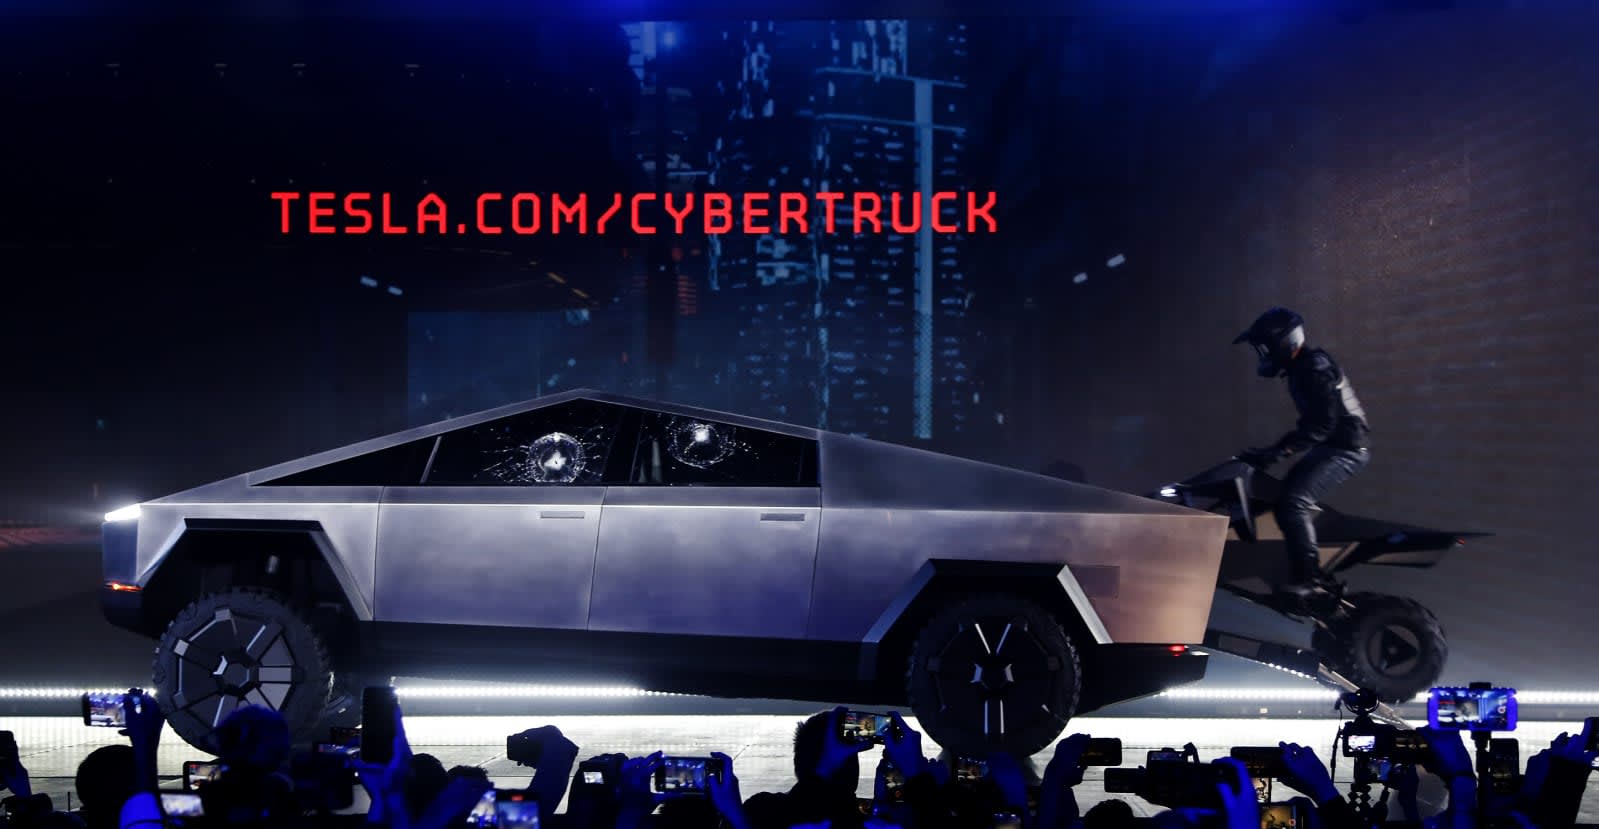 Elon Musk Confirms Tesla S Cyberquad As A Cybertruck